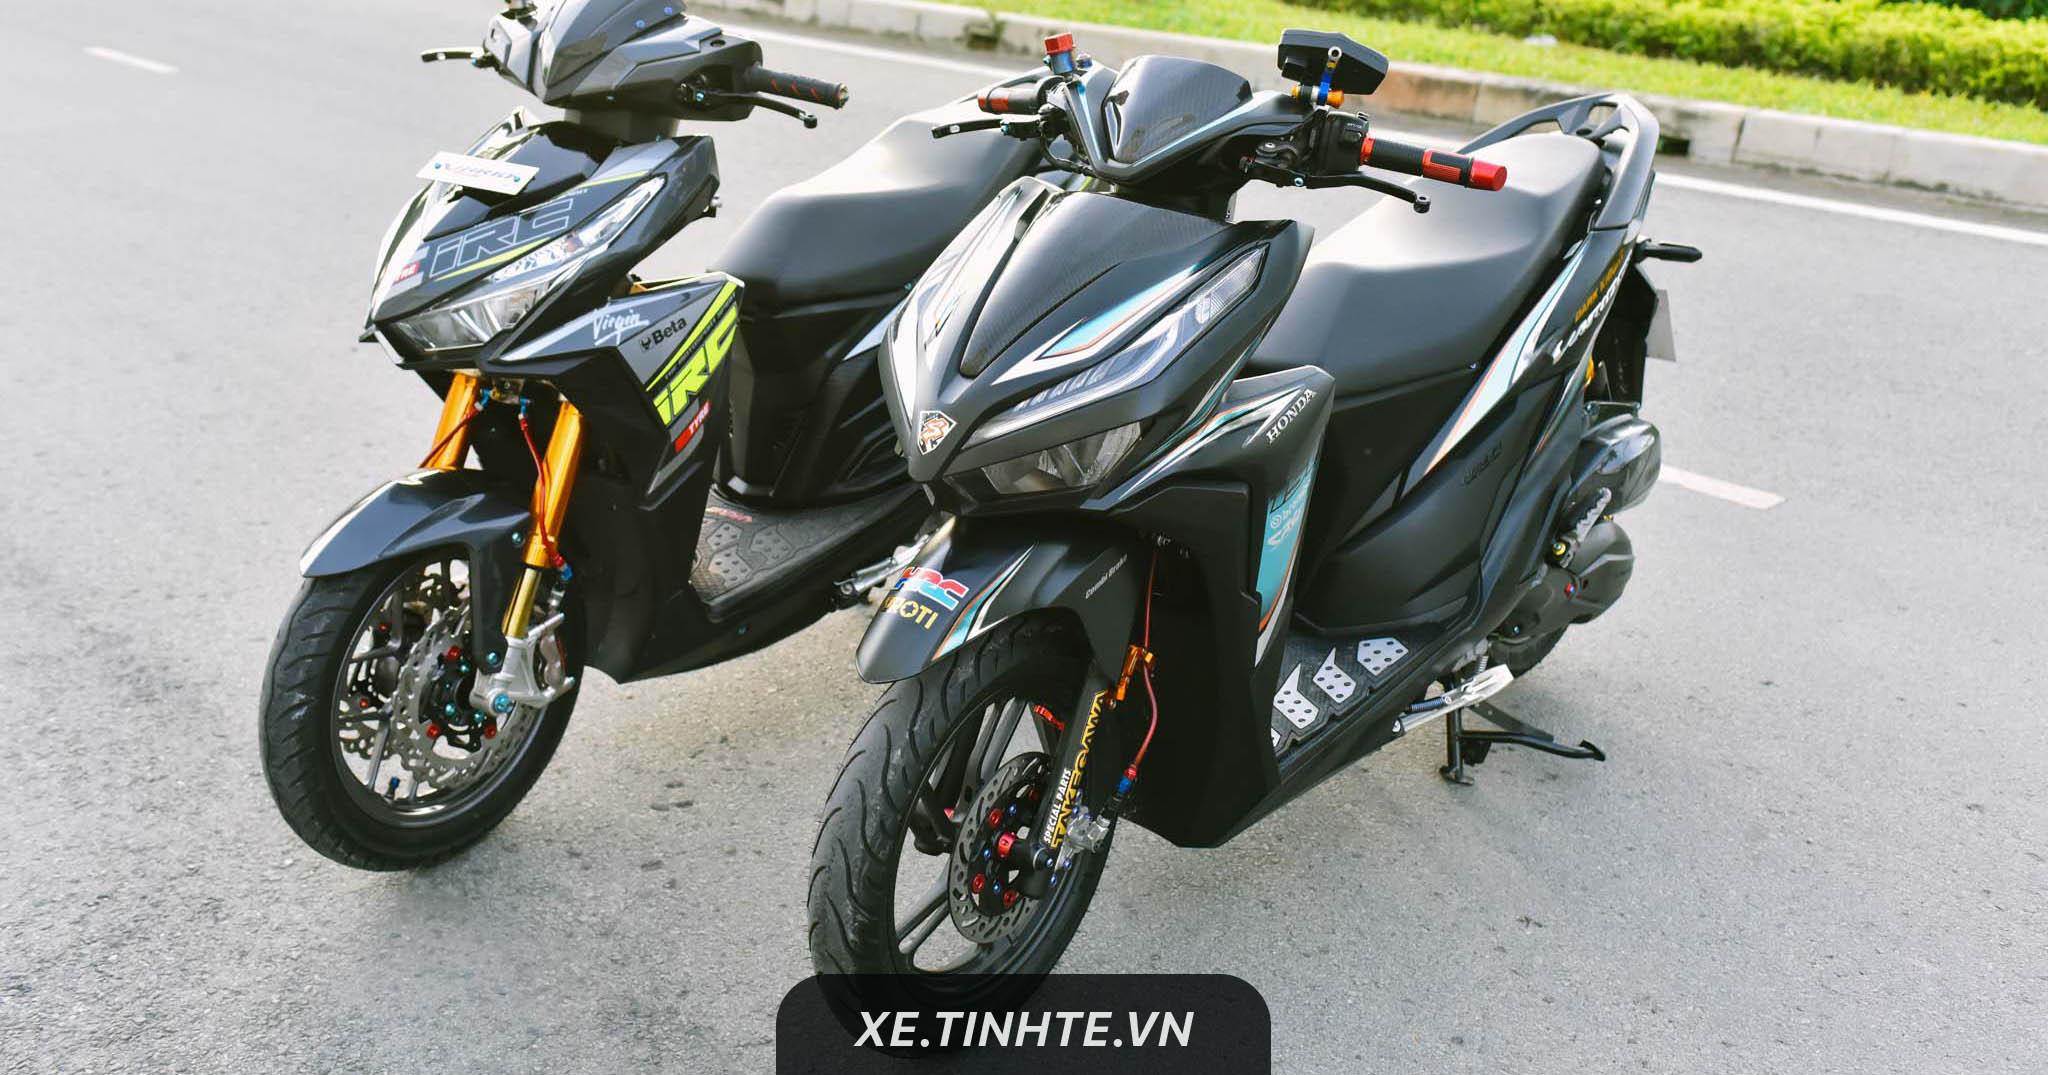 Honda Vario thế hệ mới đầu tiên về Việt Nam